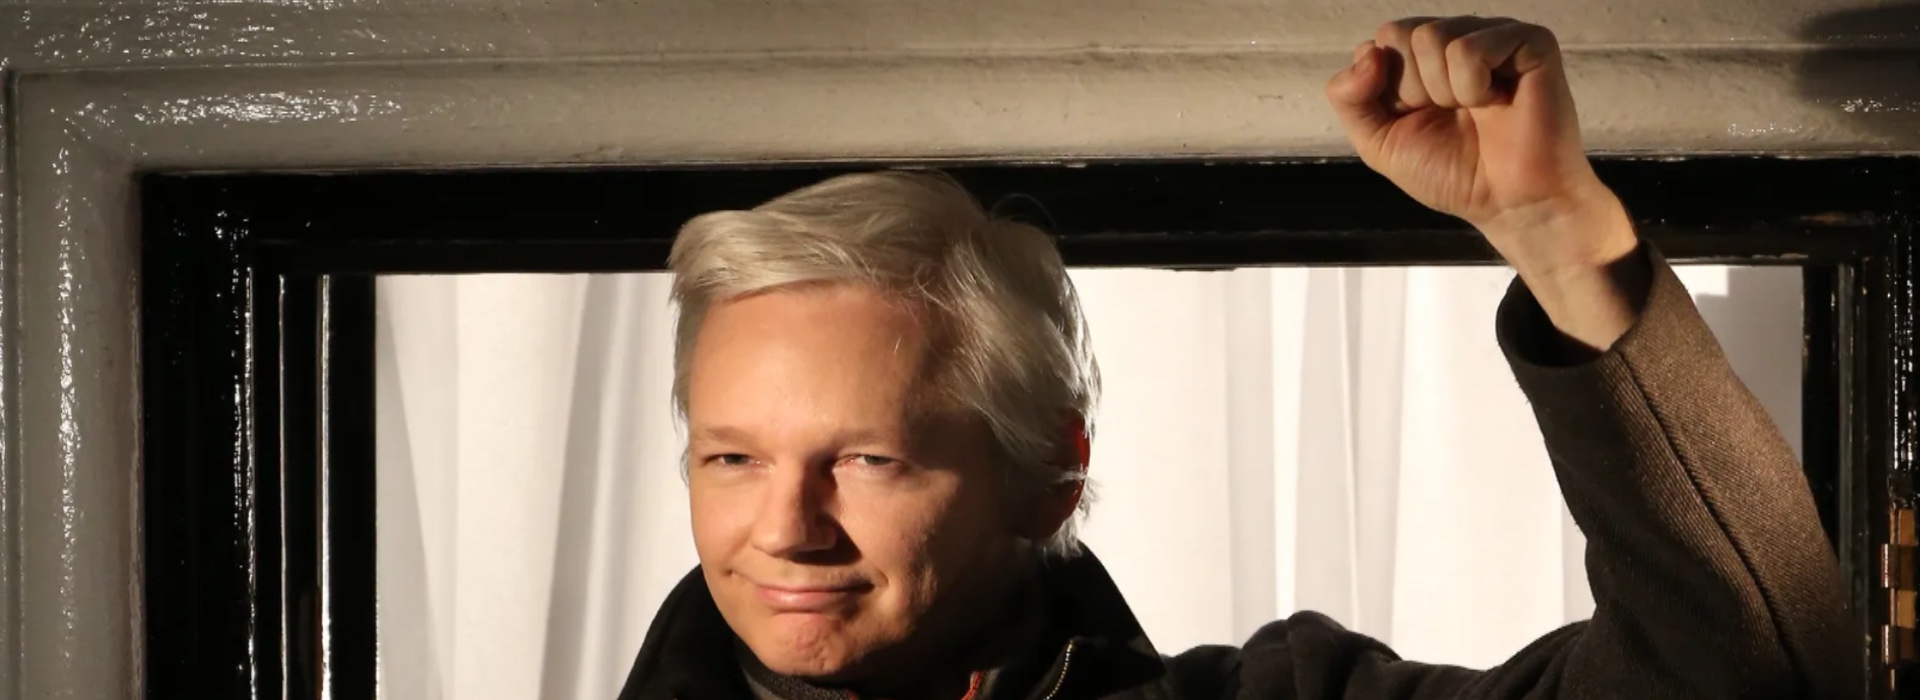 Joe Biden apre alla speranza: il futuro di Julian Assange